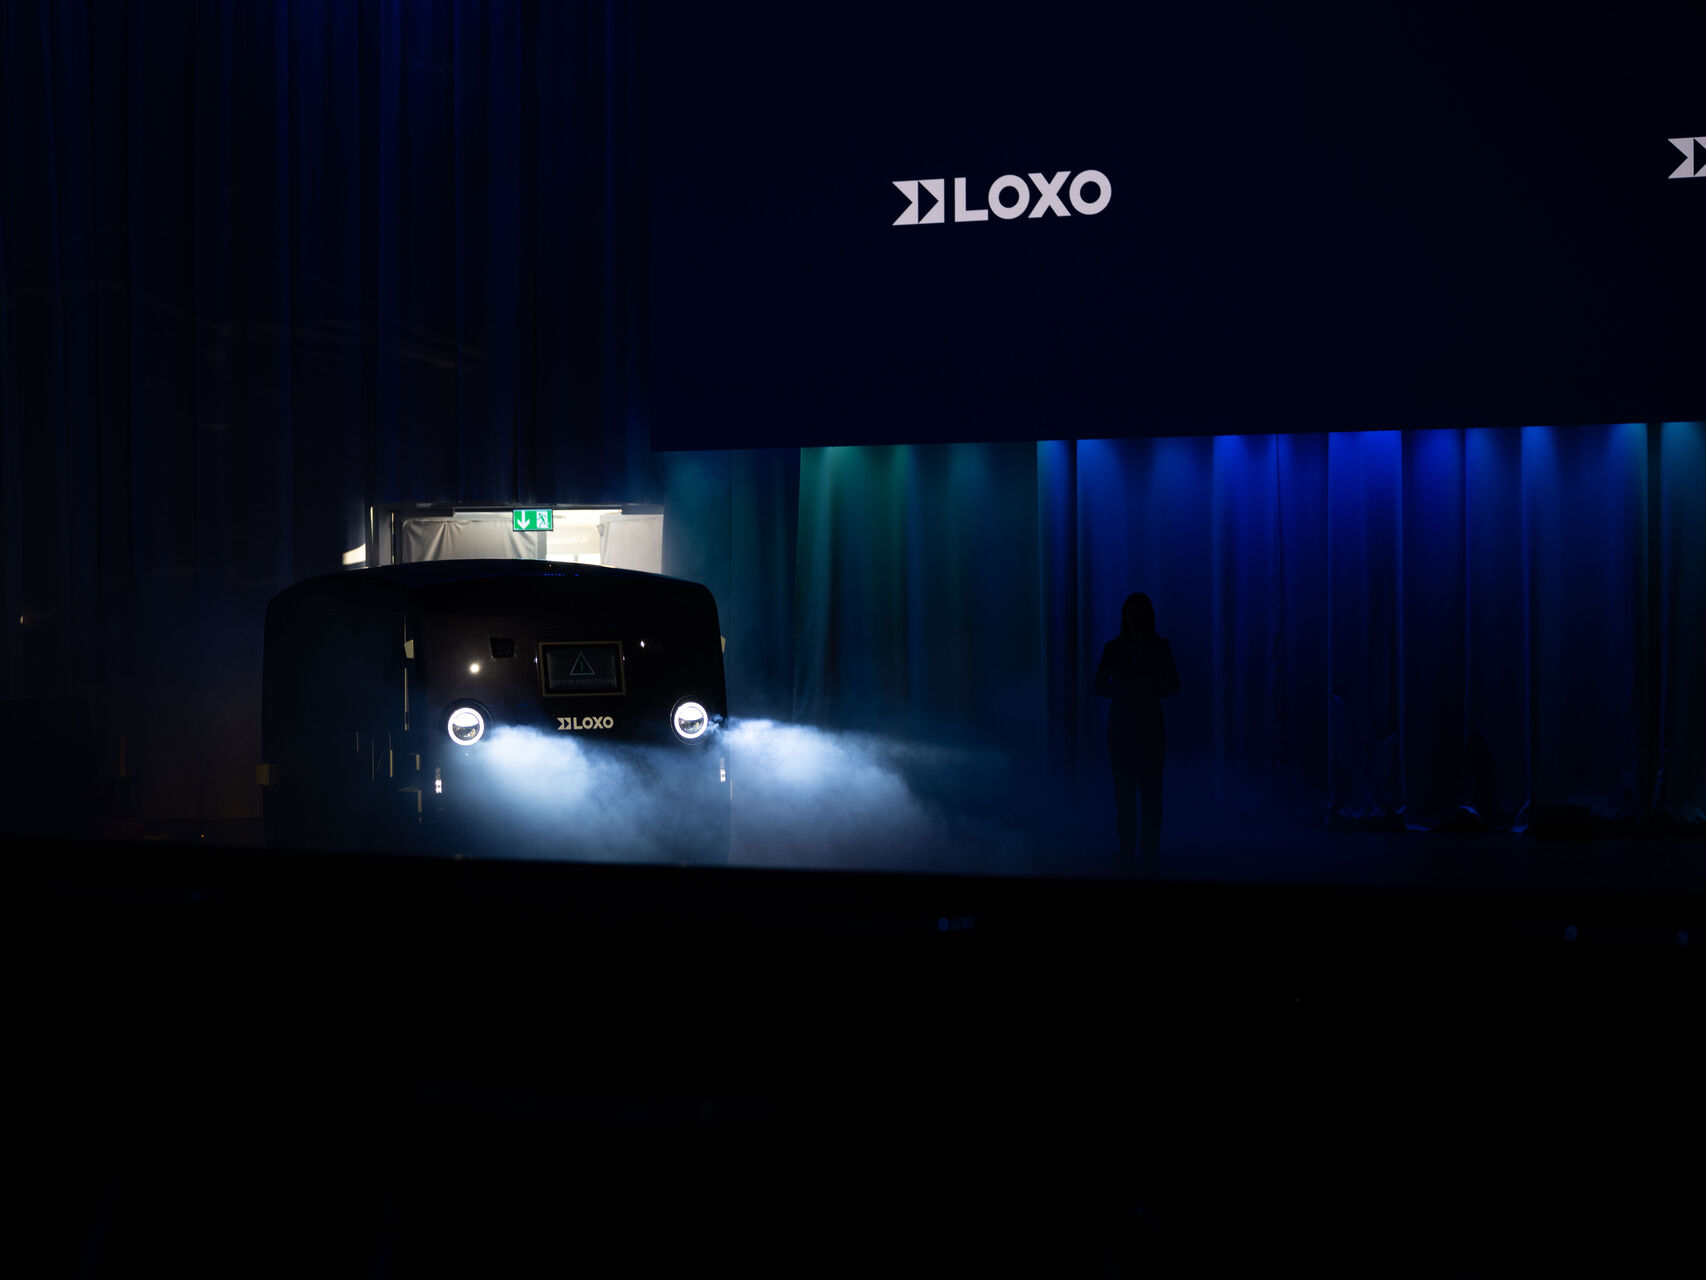 LOXO: Alpha është një furgon vetë-drejtues i prodhuar tërësisht në Zvicër dhe i prezantuar më 6 dhjetor 2022 në Kursaal në Bernë gjatë një konference për shtyp nga start-up LOXO